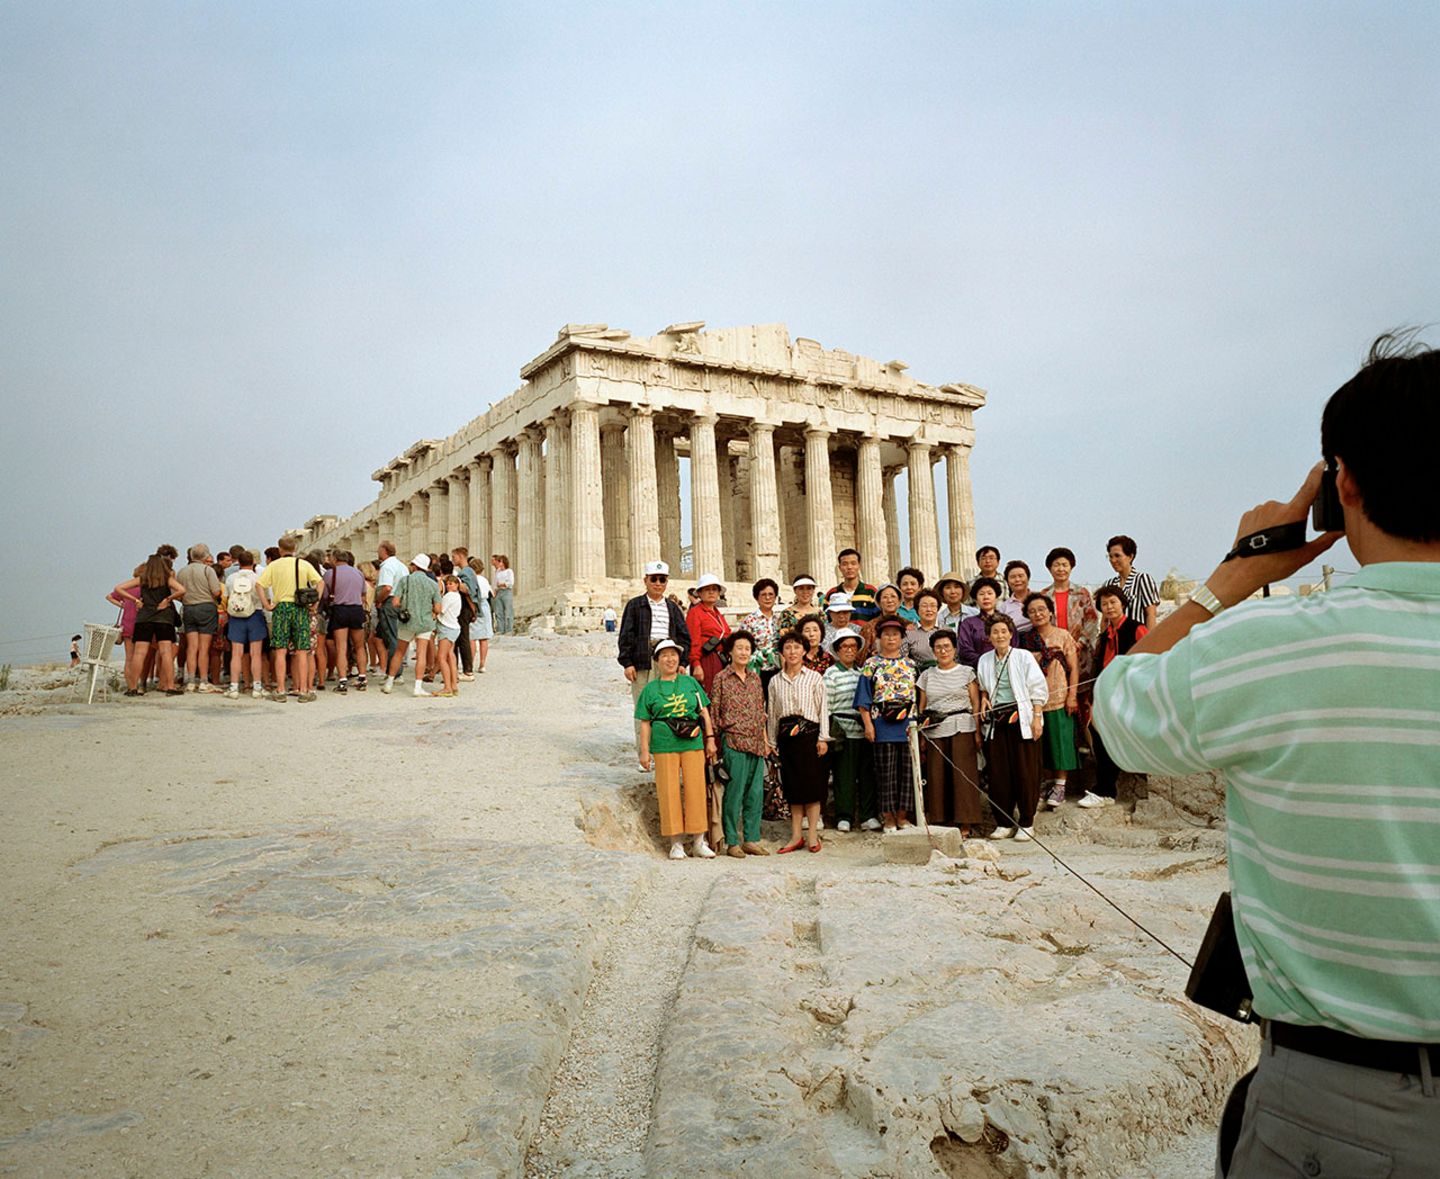 Martin Parr / Acropolis, Athens, Greece, 1991